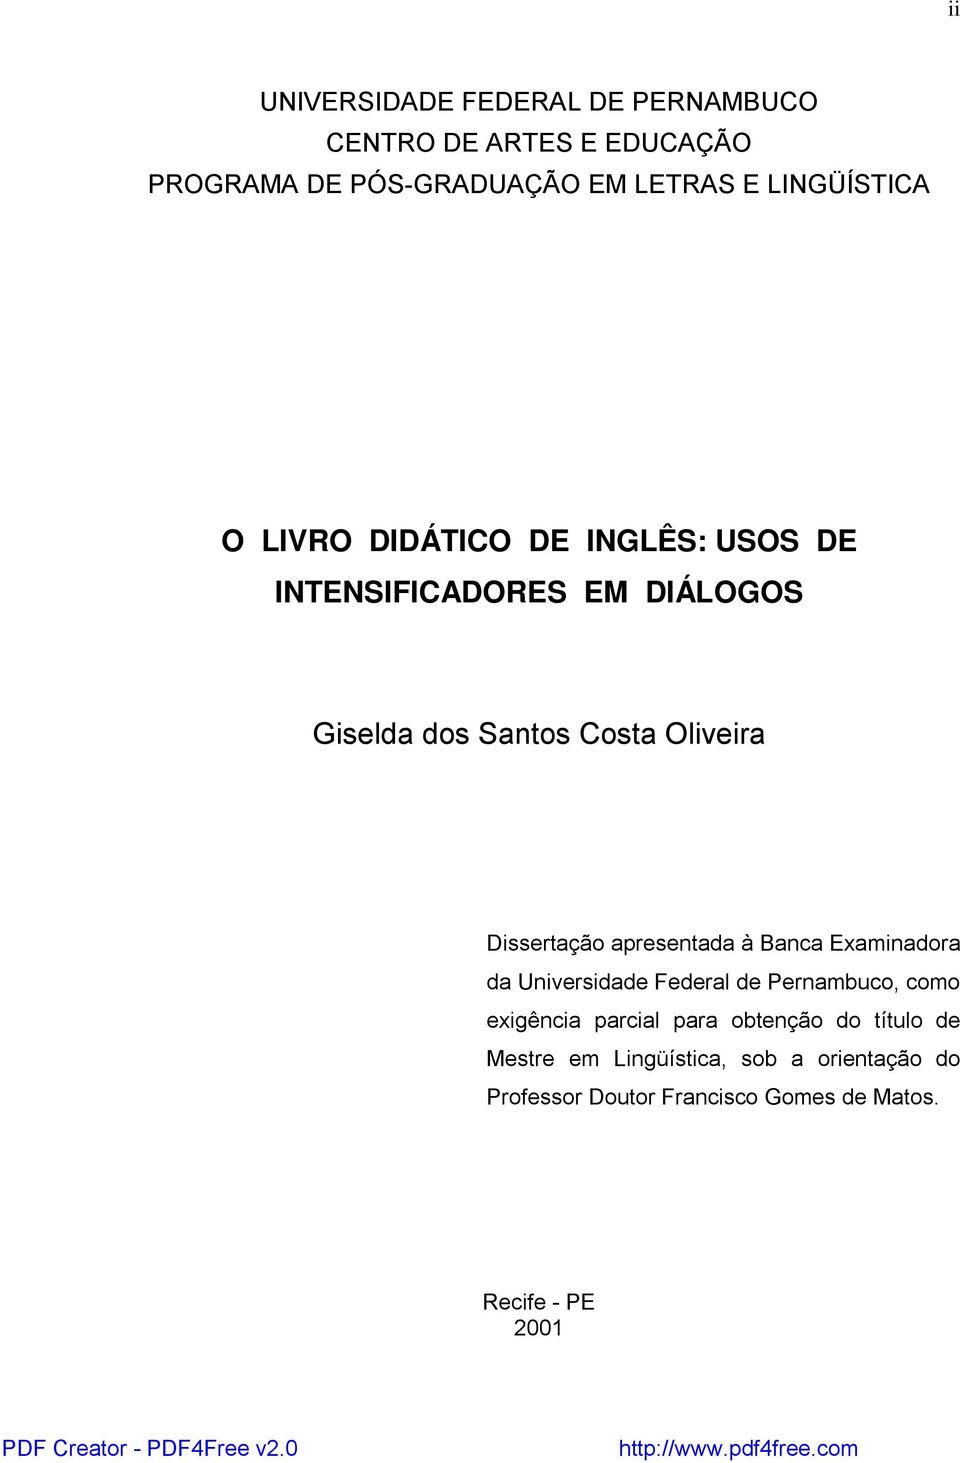 Dissertação apresentada à Banca Examinadora da Universidade Federal de Pernambuco, como exigência parcial para